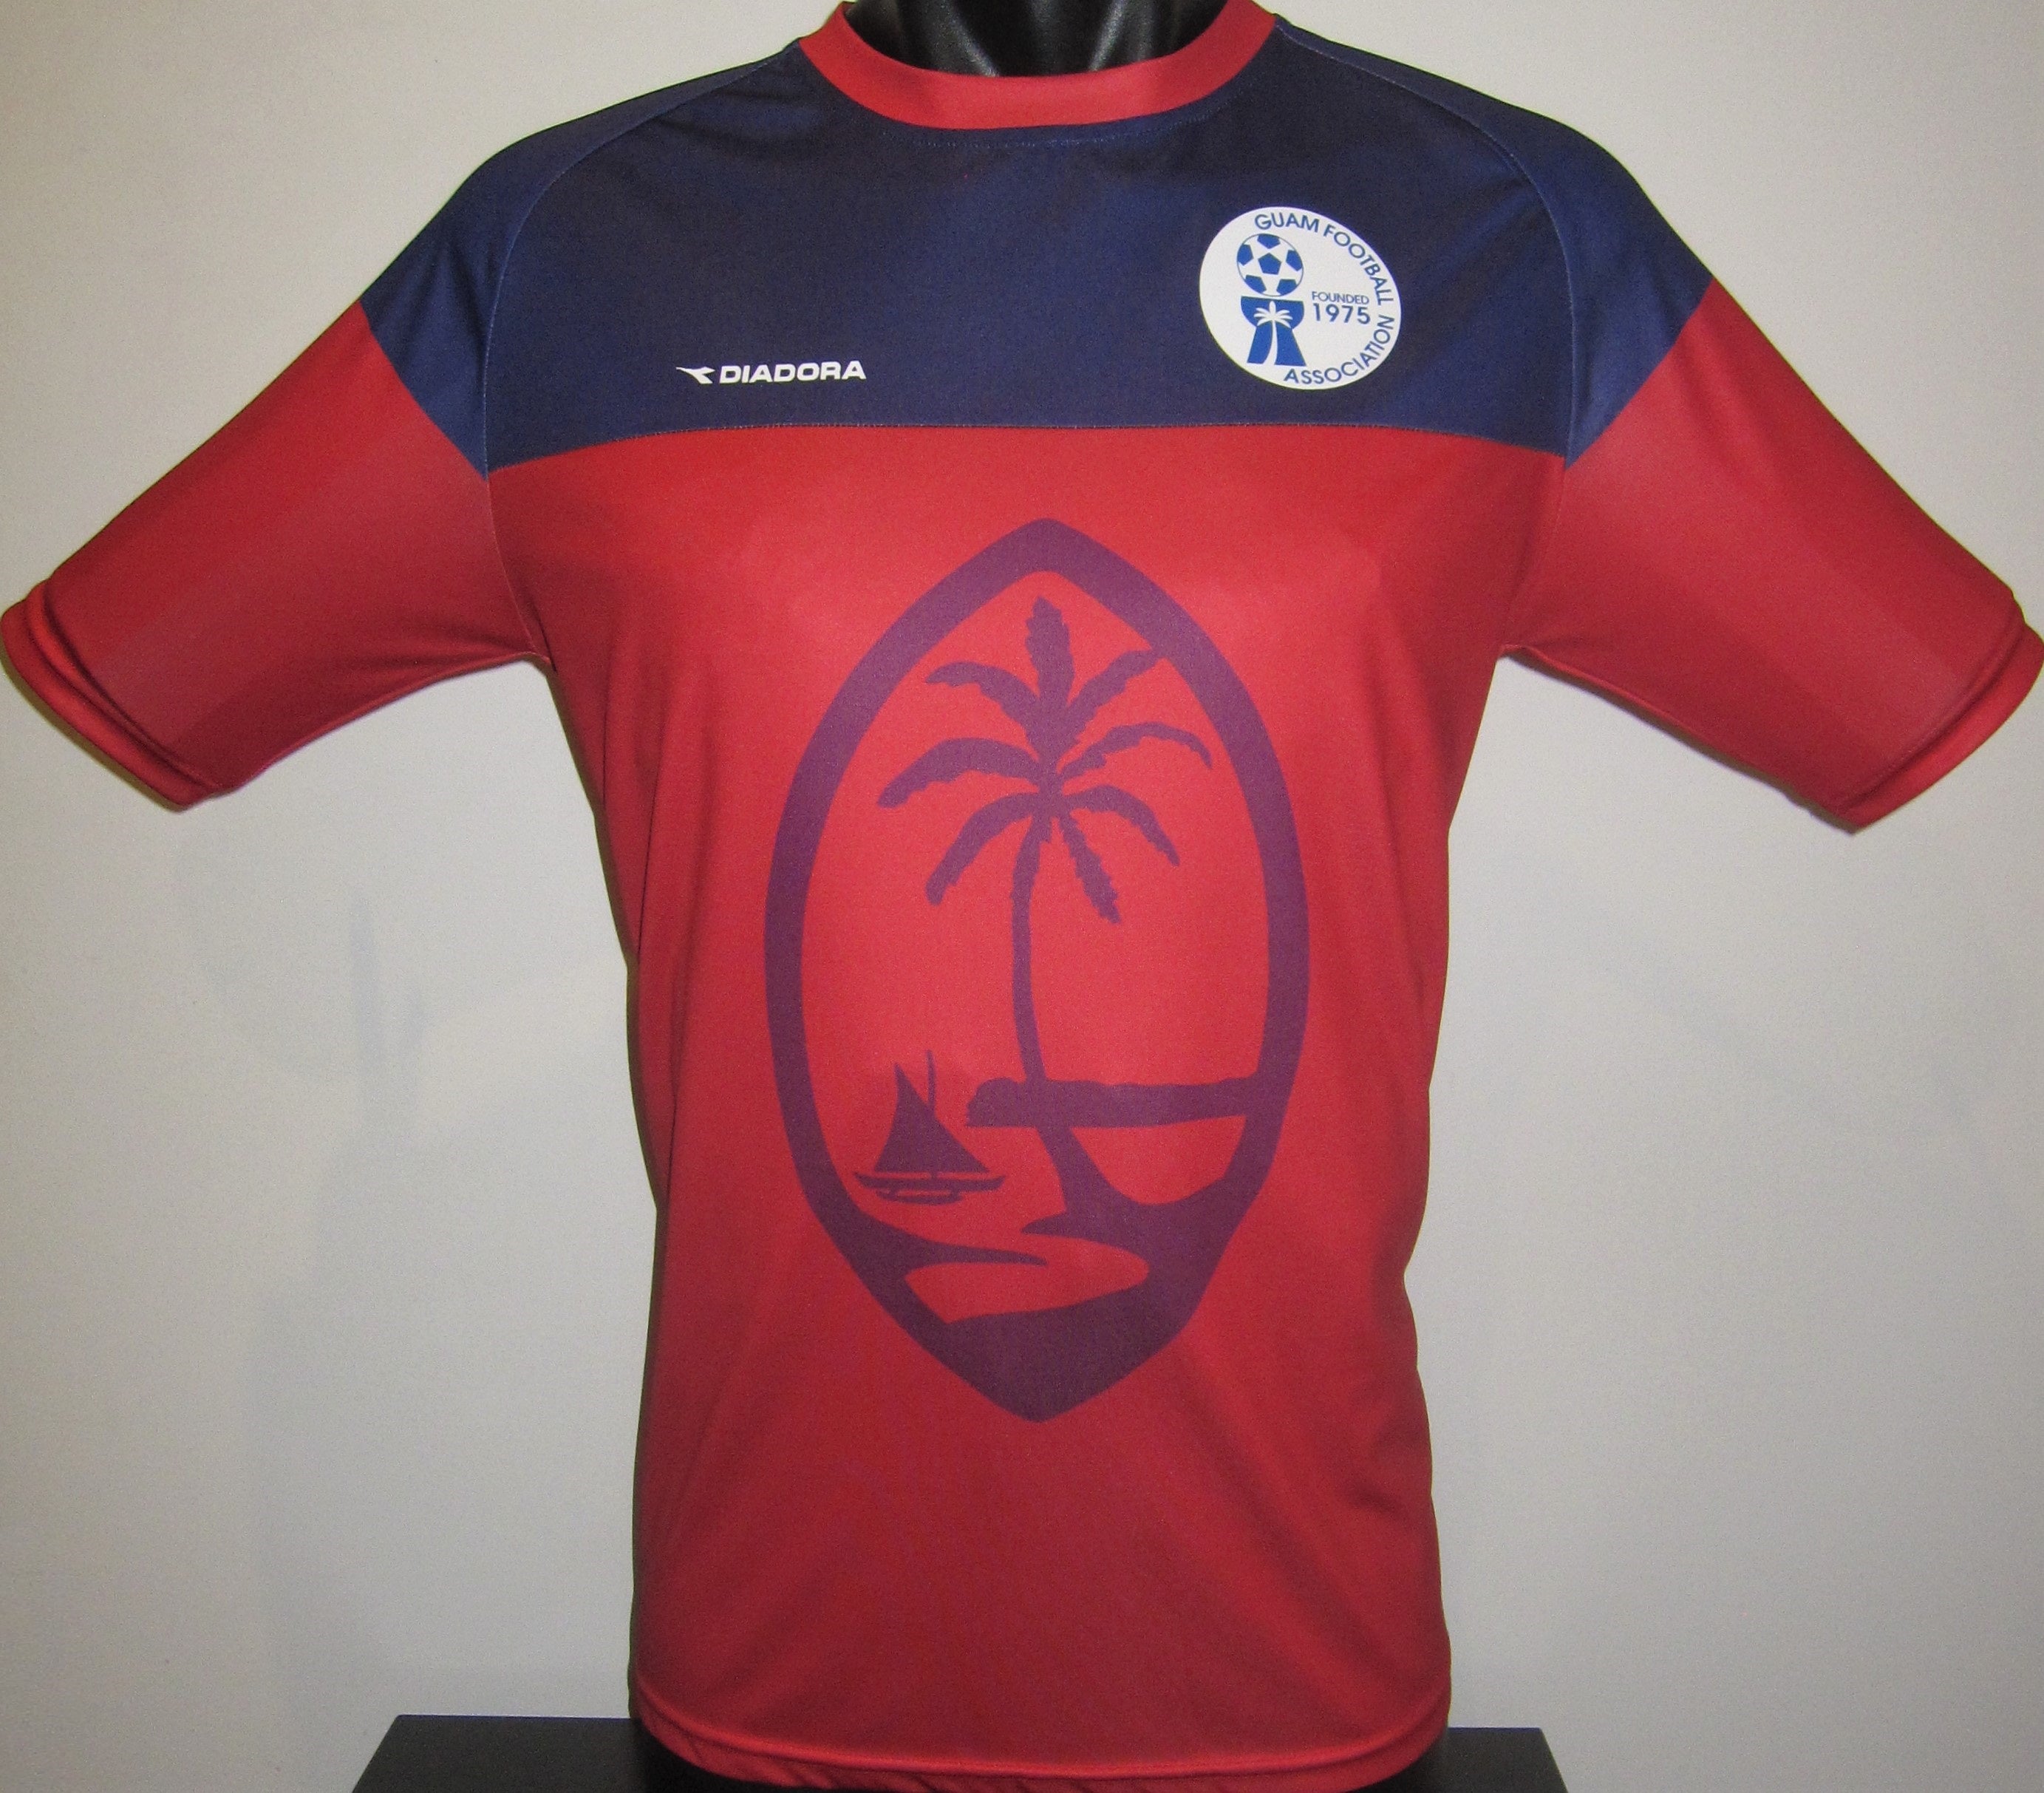 Guam 2015-16 Home Jersey/Shirt